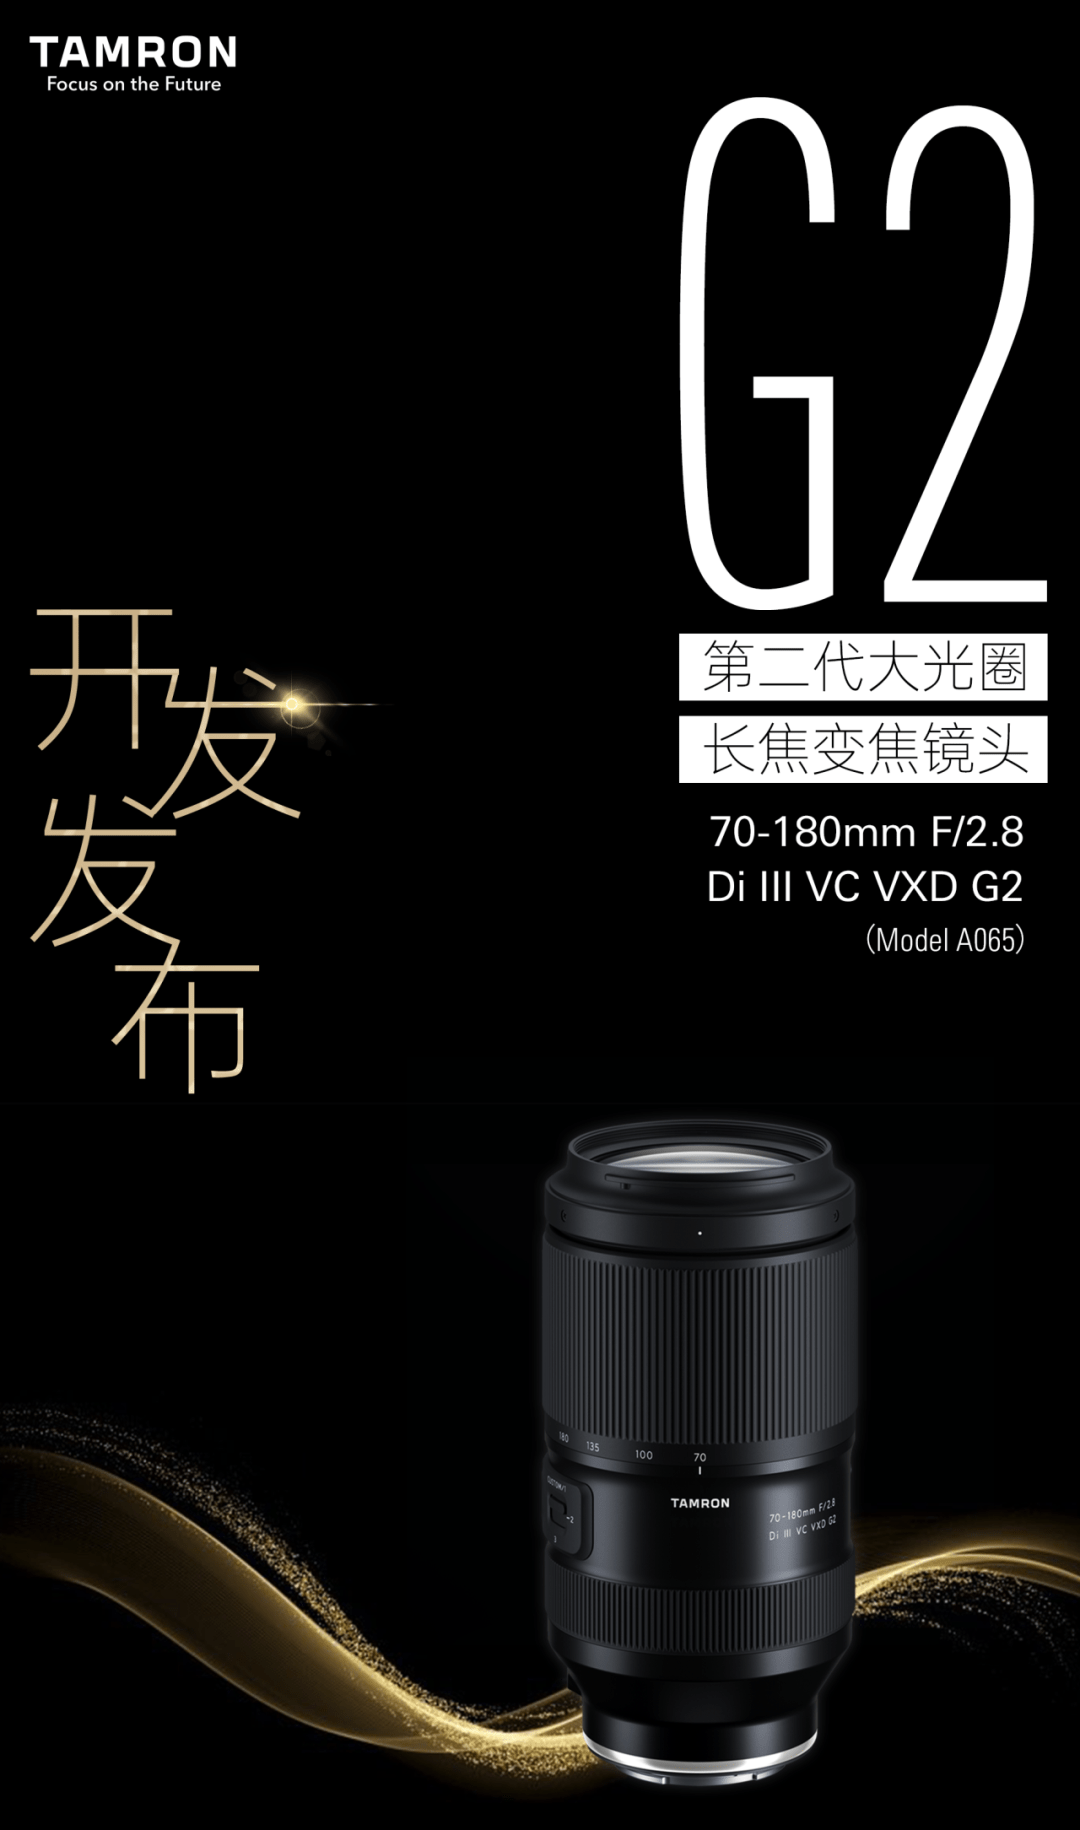 腾龙宣布开发70-180mm F/2.8 Di III VC VXD G2镜头：将在2023年秋季上市 适用于索尼E卡口